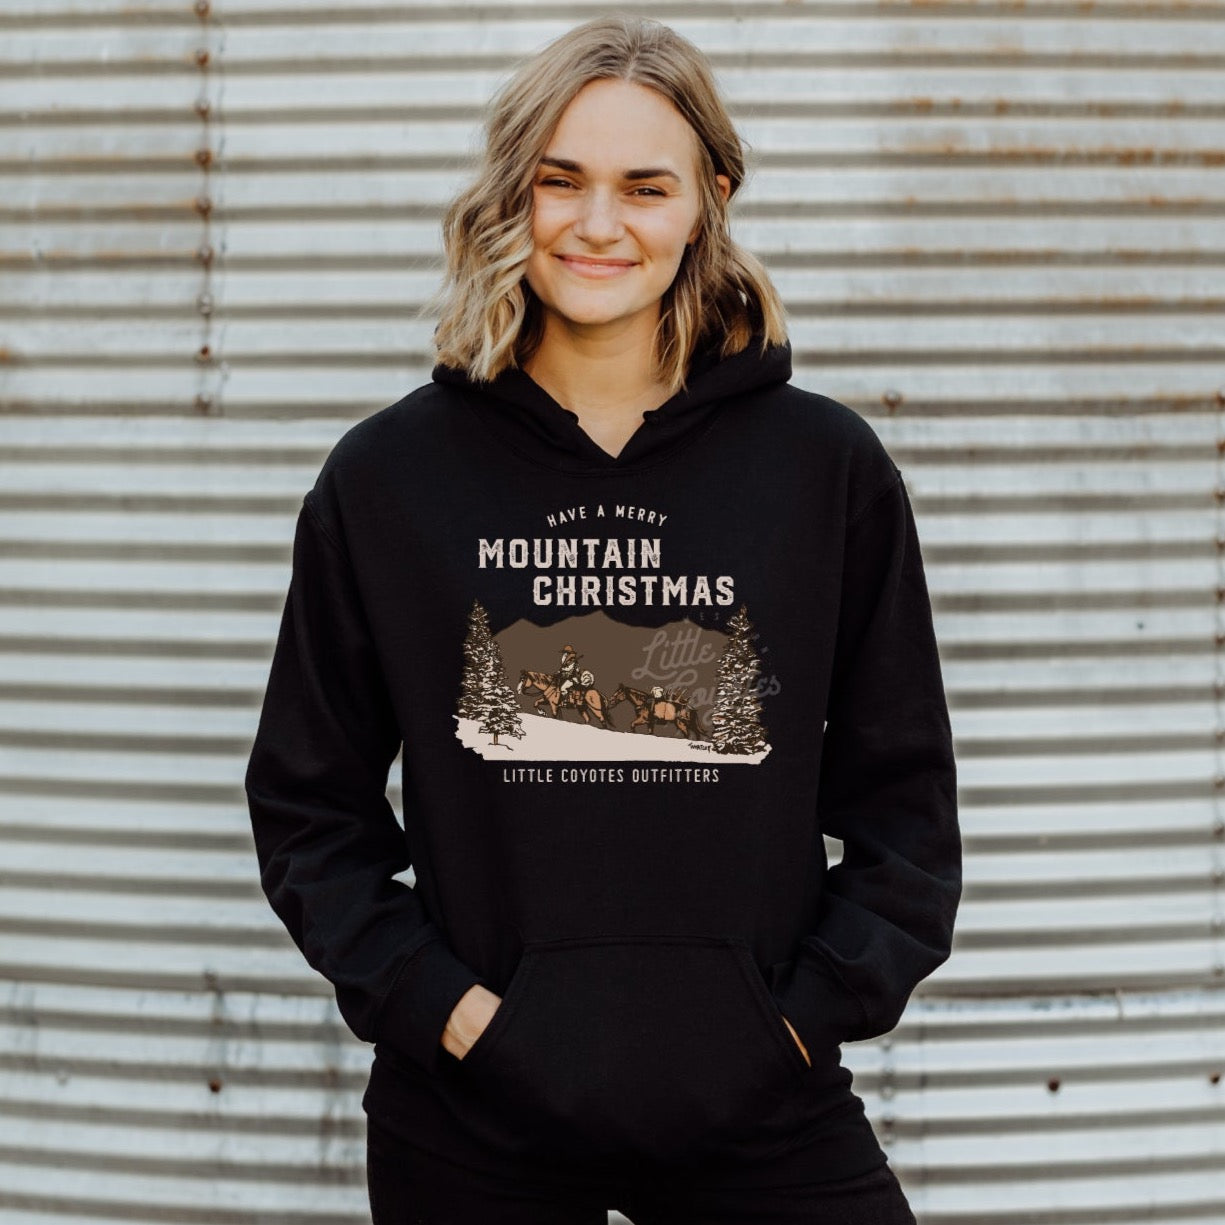 Pre-Order “Mountain Christmas” Adult Hooded Sweatshirt in Black